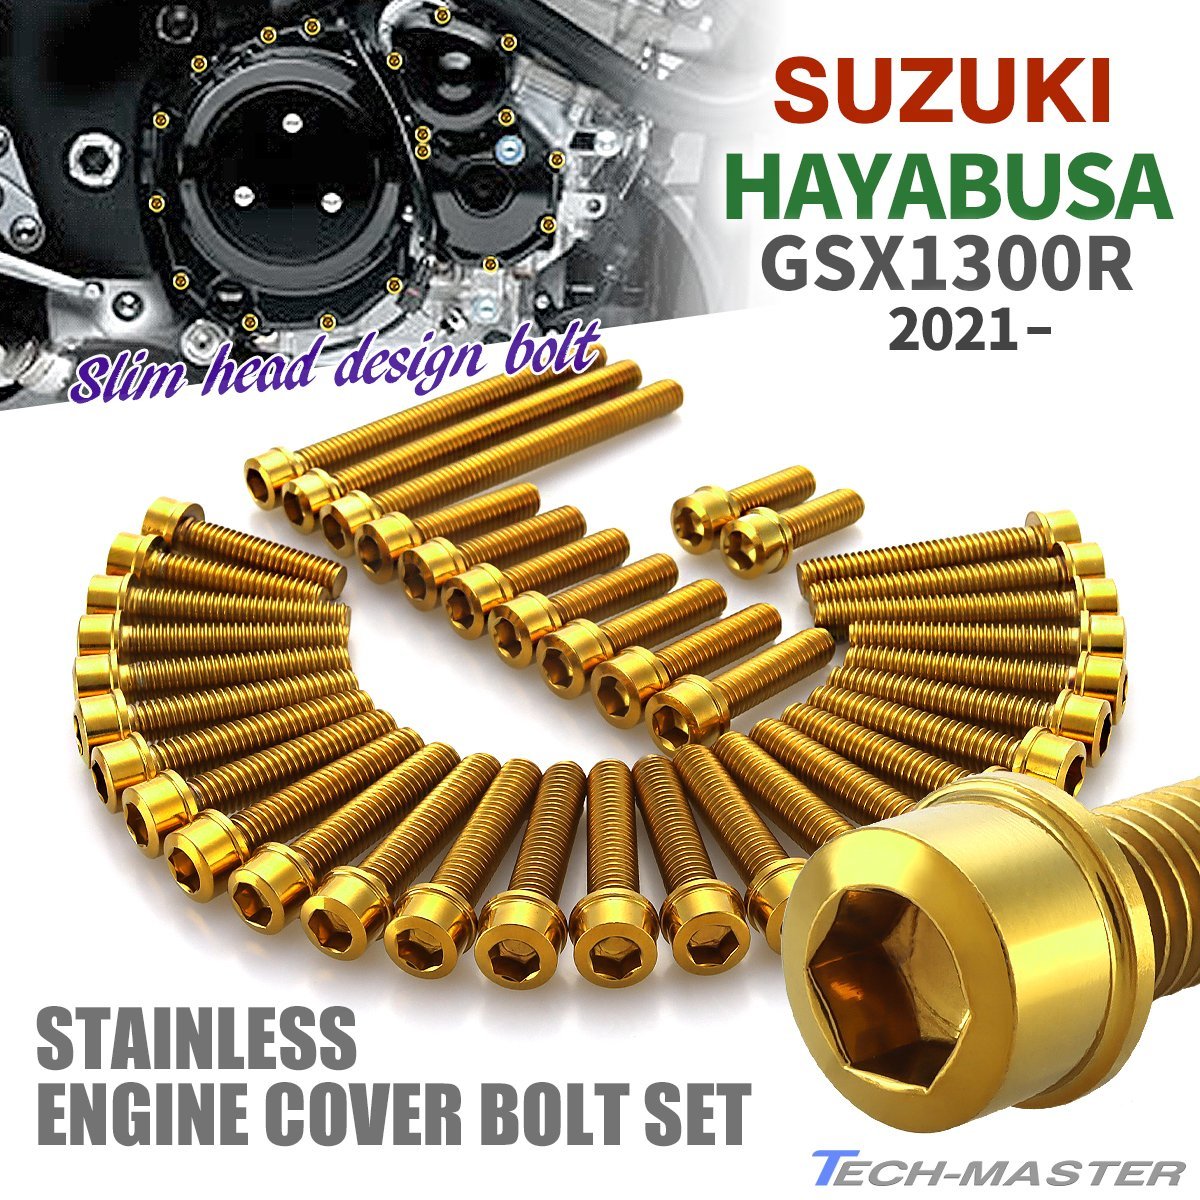 GSX1300R HAYABUSA エンジンカバー クランクケース ボルト 38本セット ステンレス製 スズキ車用 ゴールドカラー TB9237_画像1